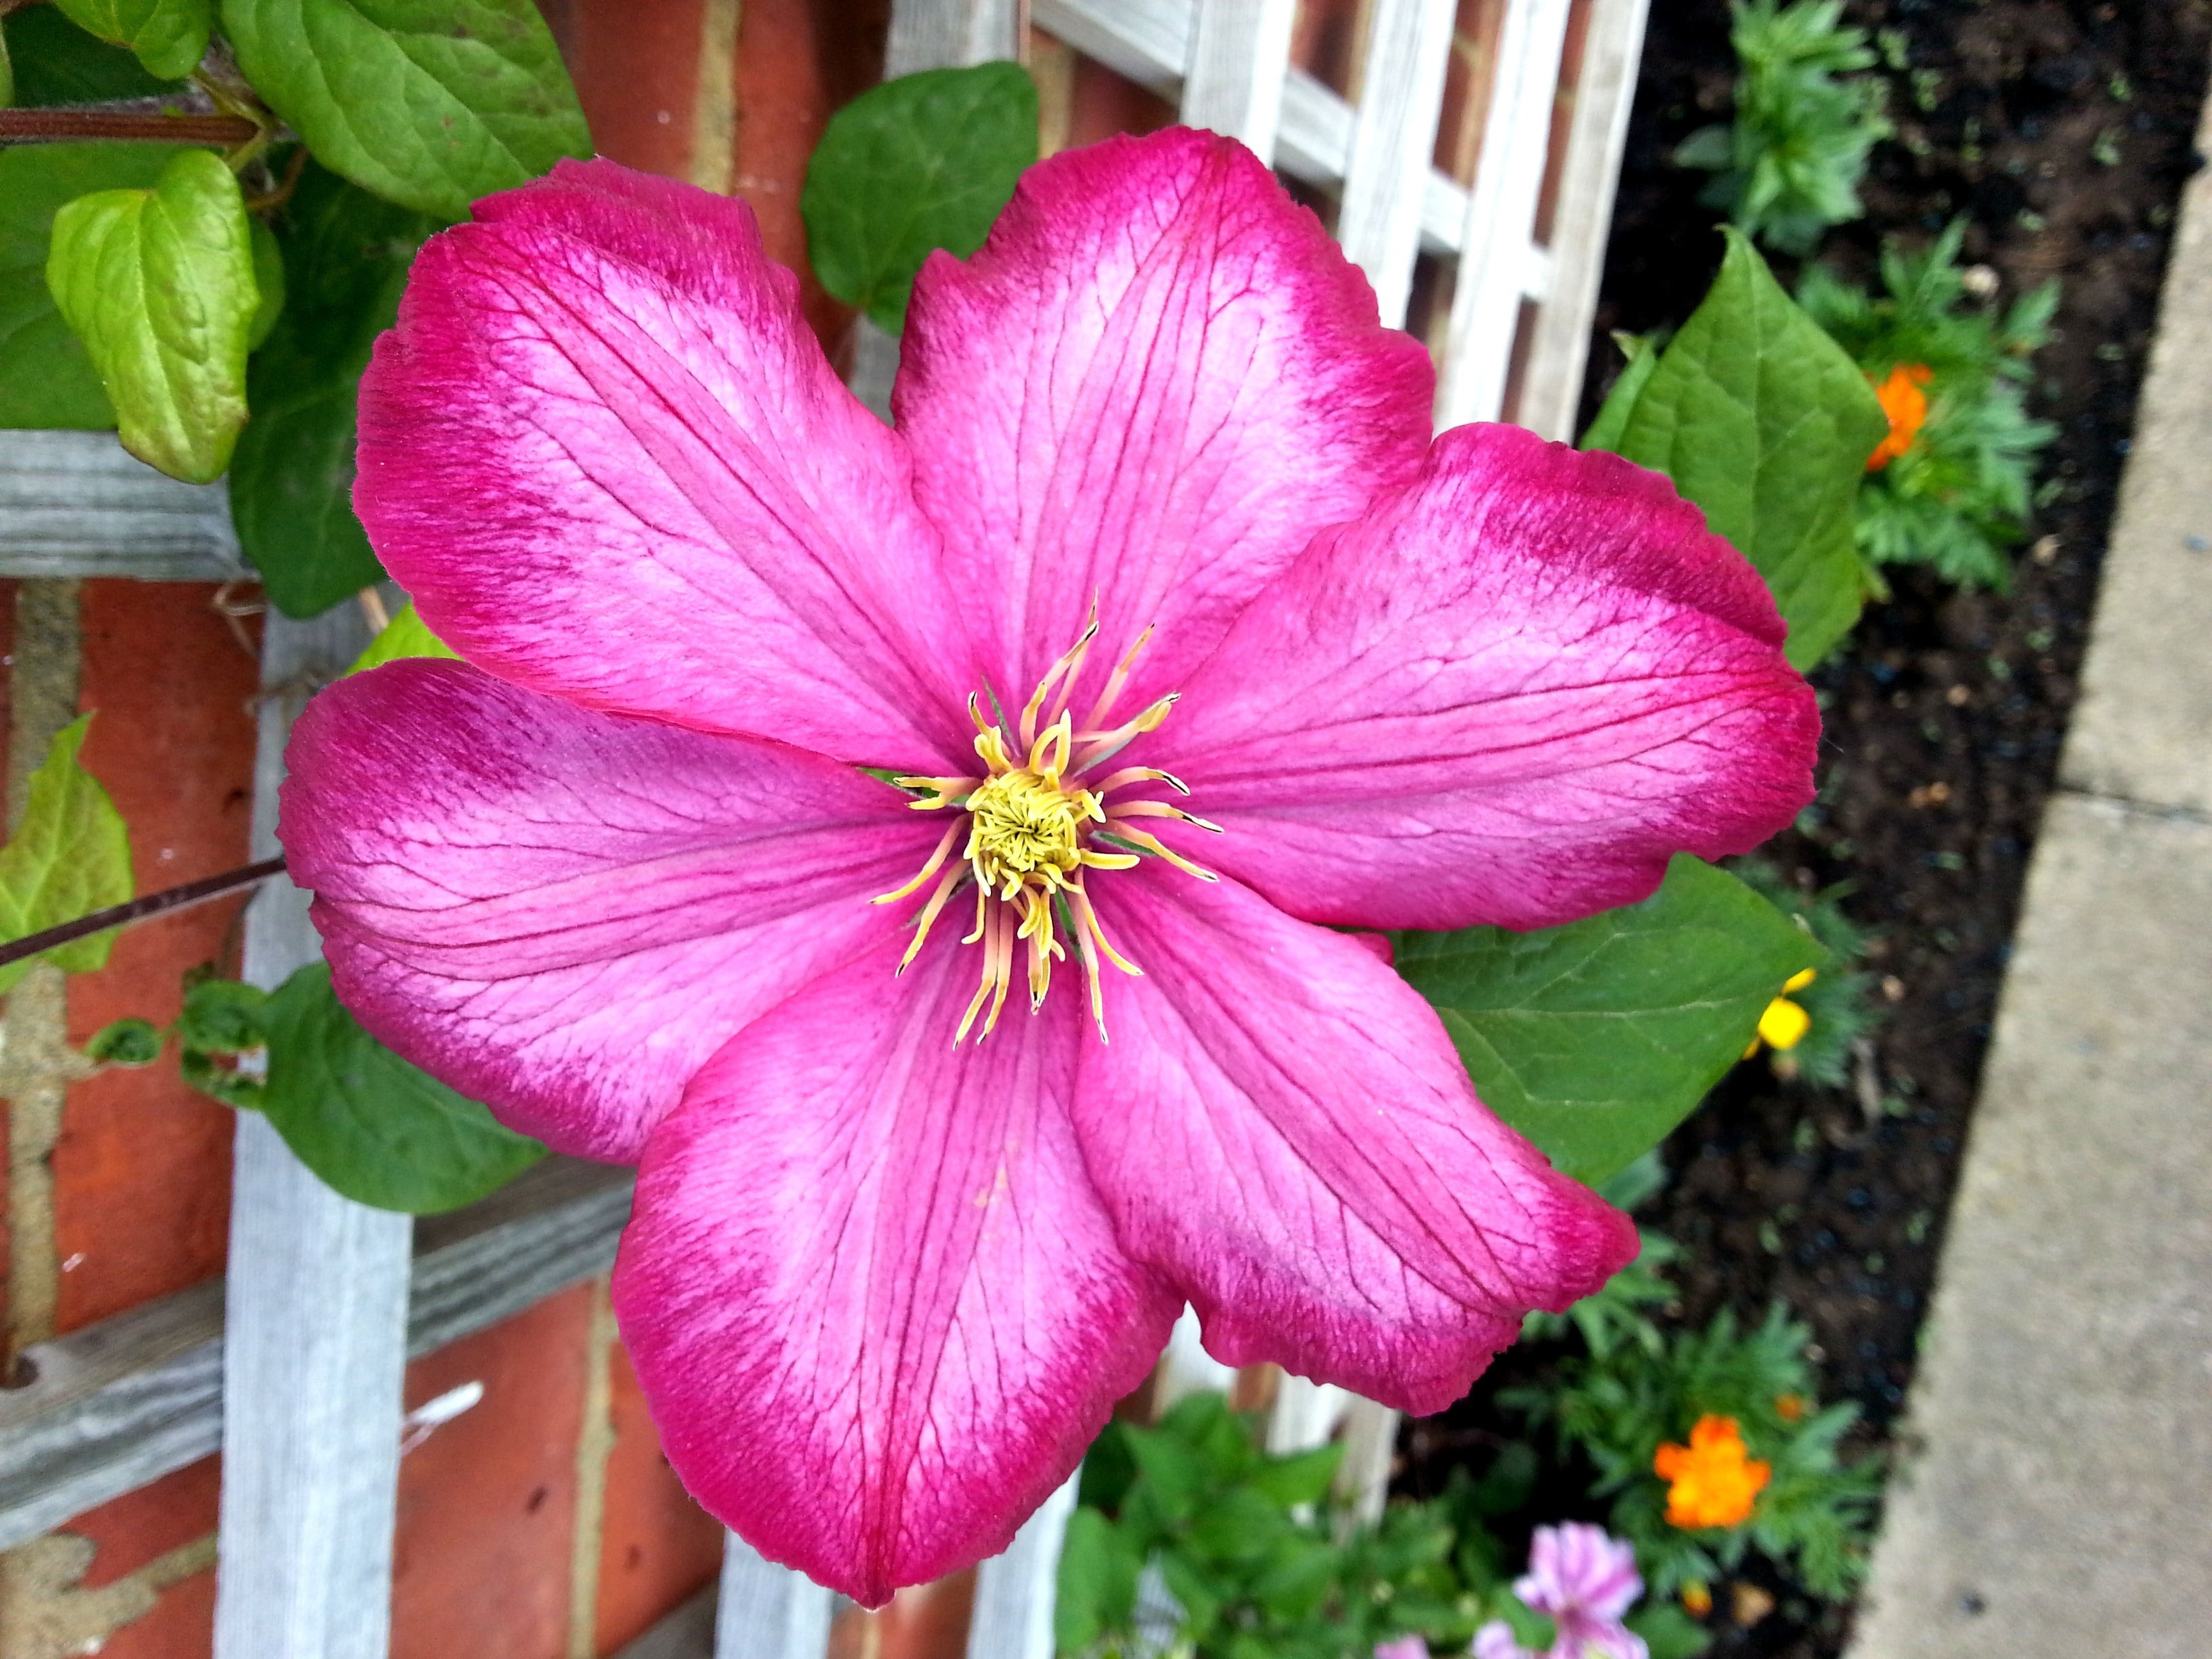 pink 6 petaled flower